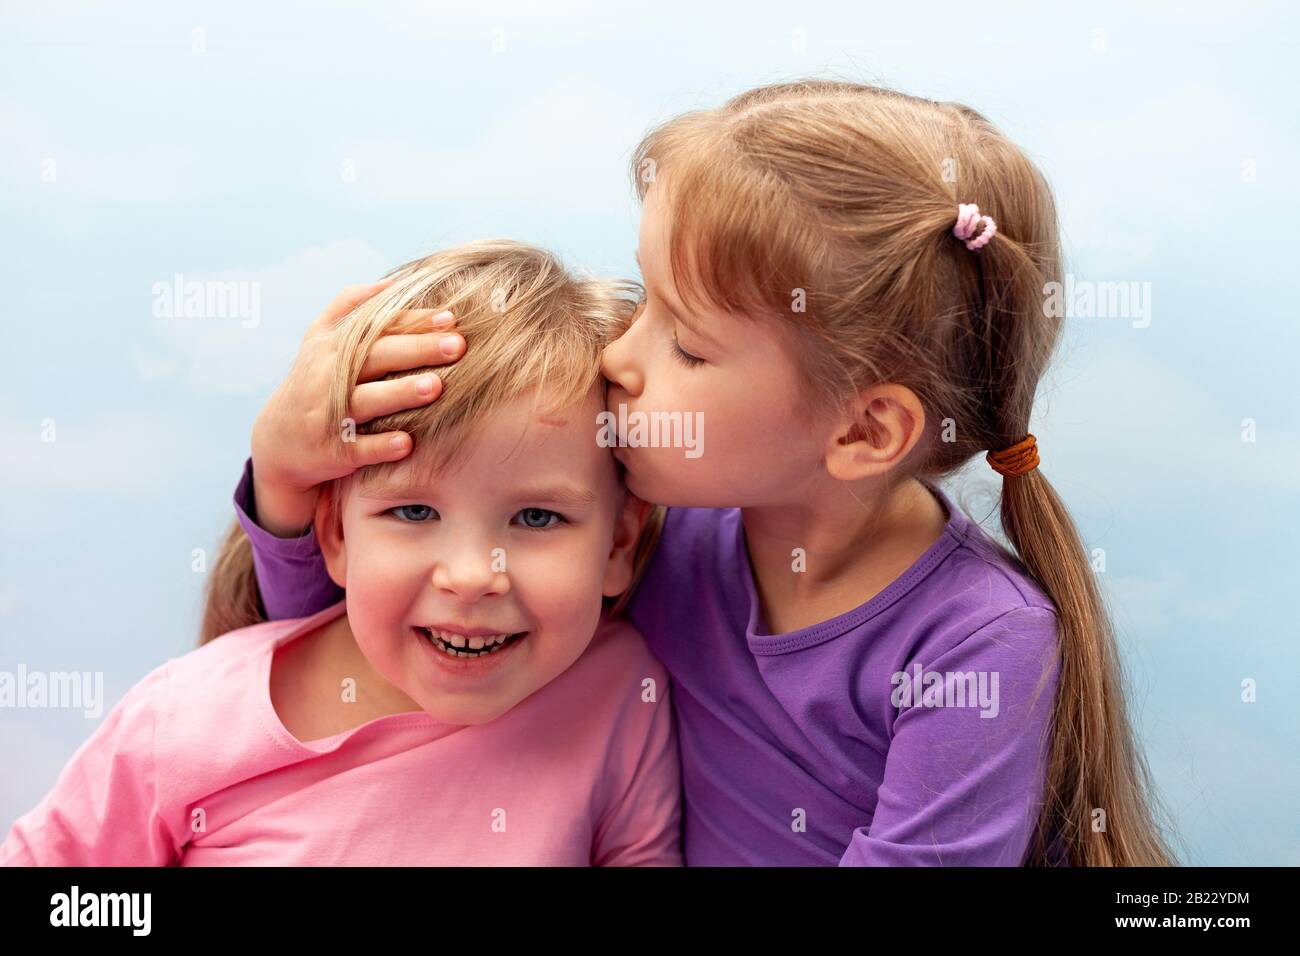 Zwei kleine Mädchen, Vorschooler, Geschwister der jungen Schwestern, die schwelen, lachen. Kinder küssen sich auf das Kopfkonzept. Pflege und Liebe in Familie, Kindheit Stockfoto